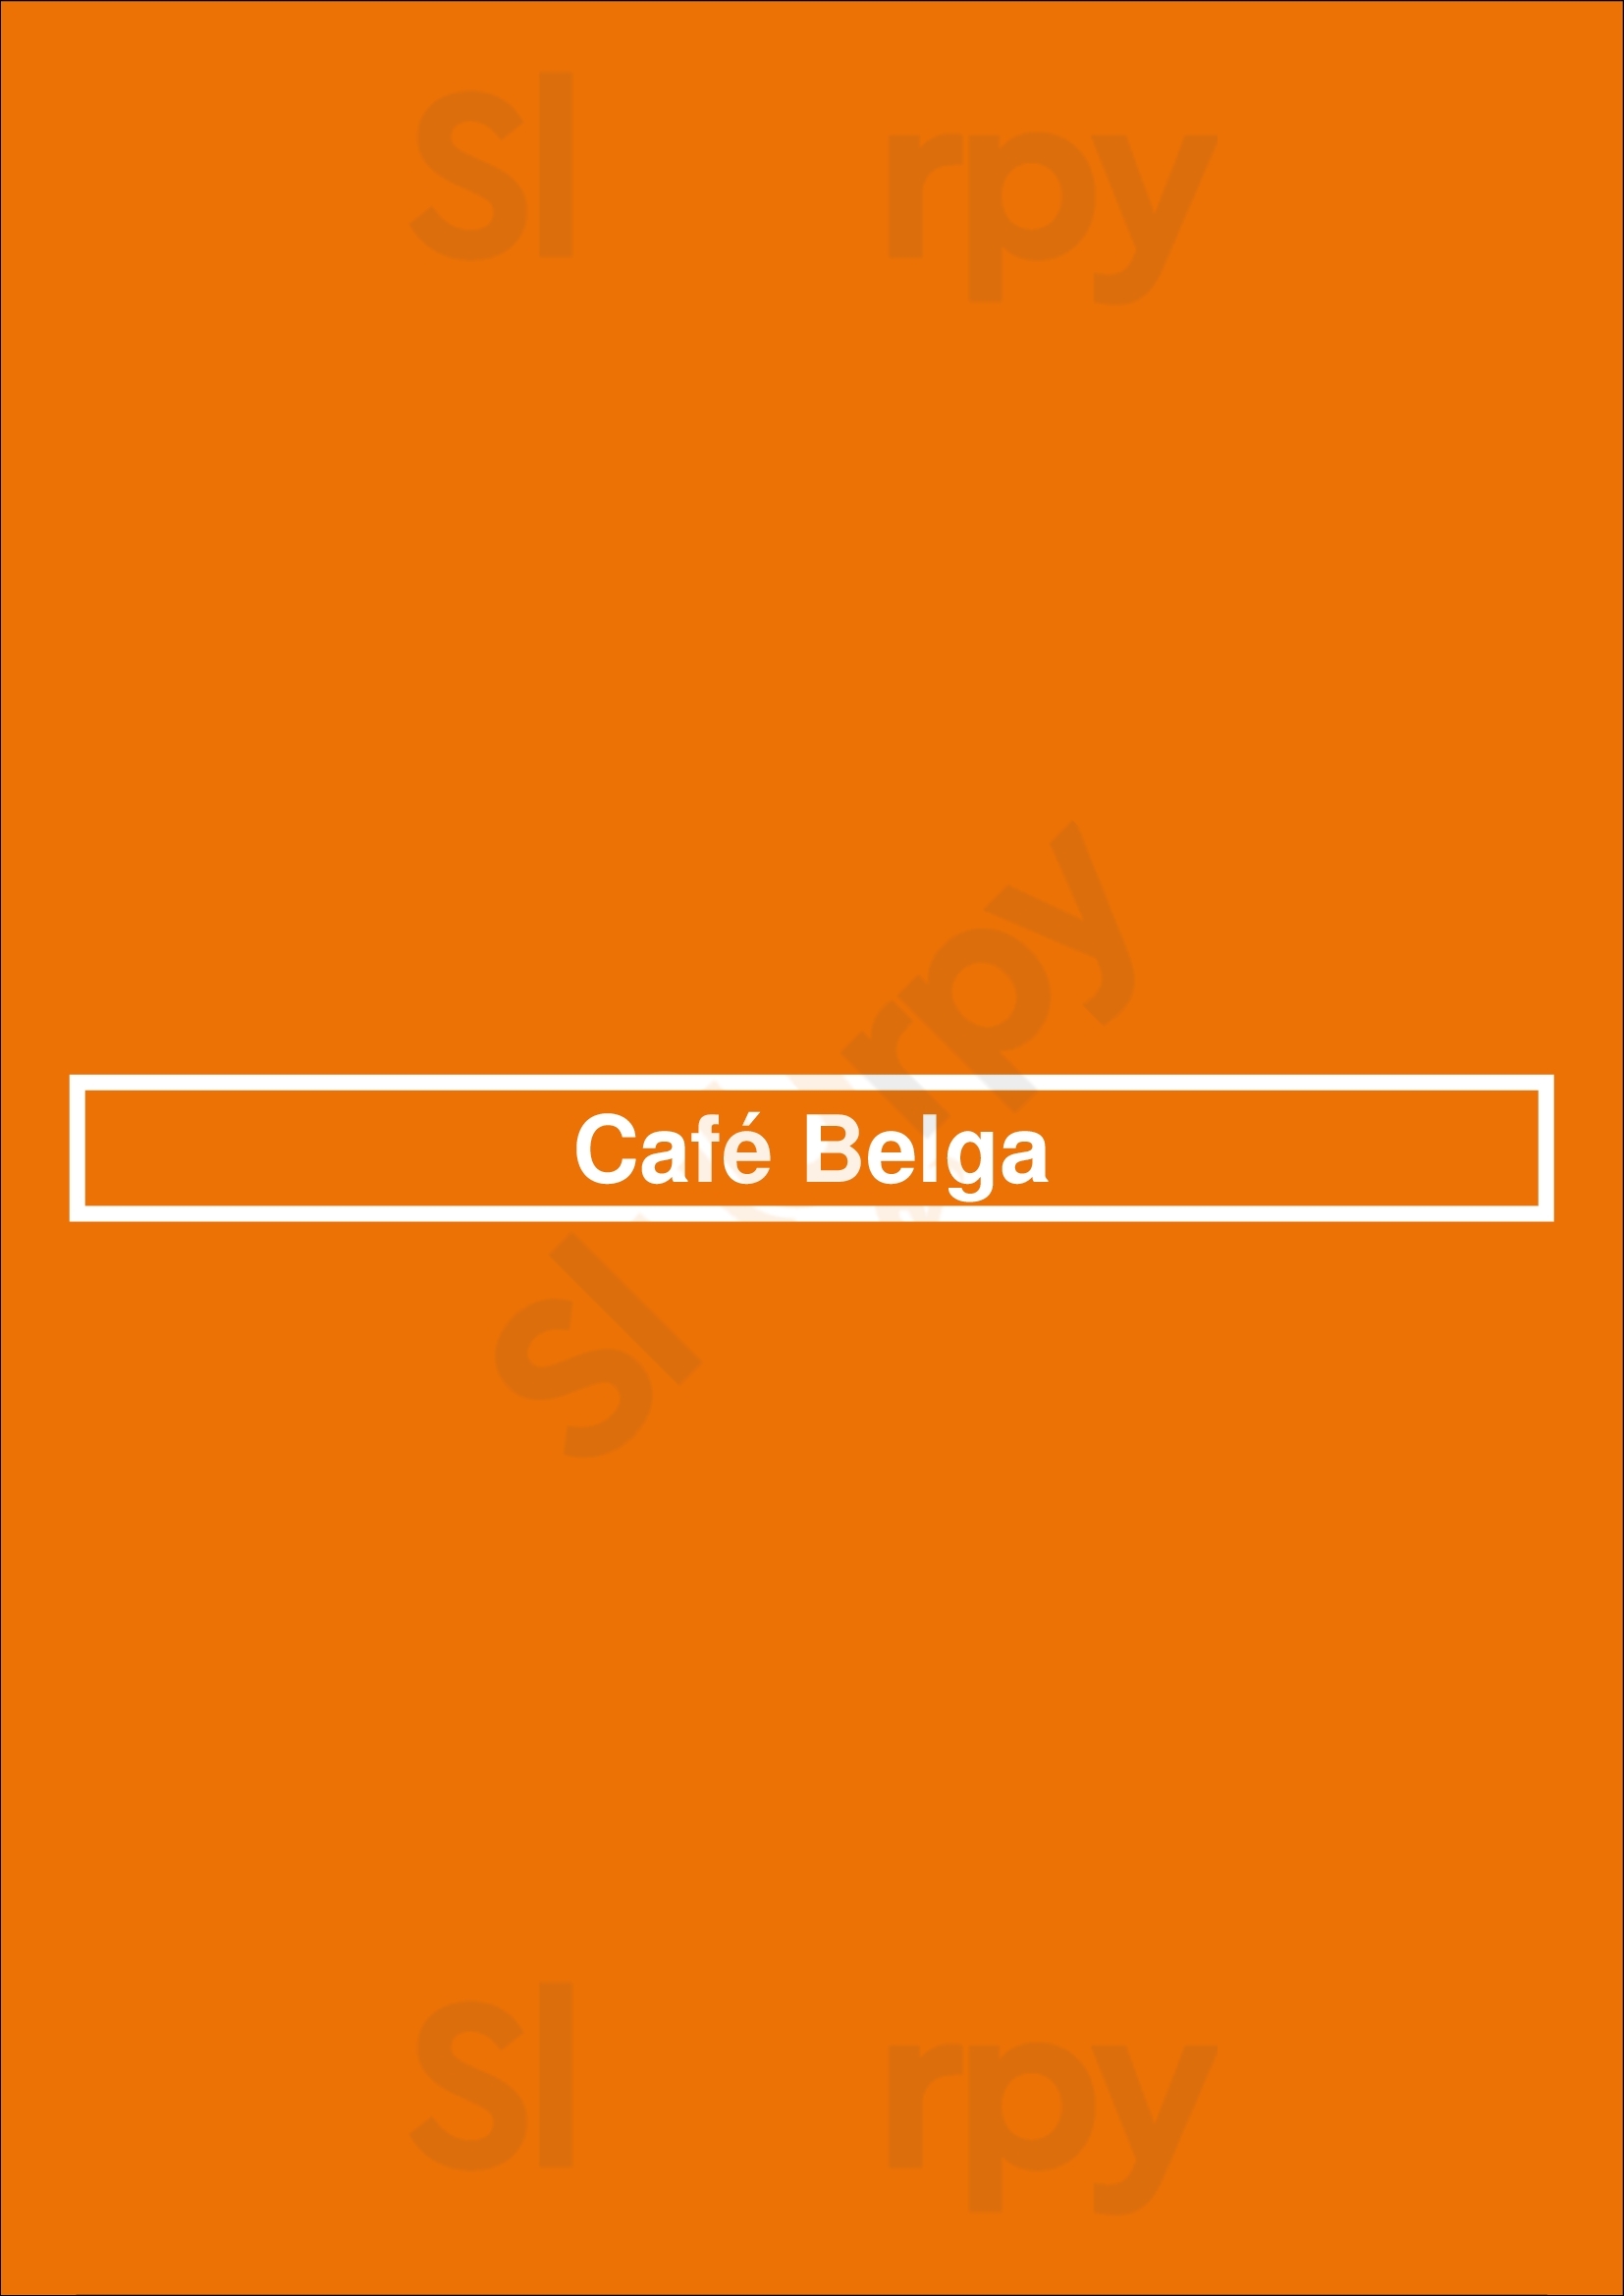 Café Belga Lisboa Menu - 1